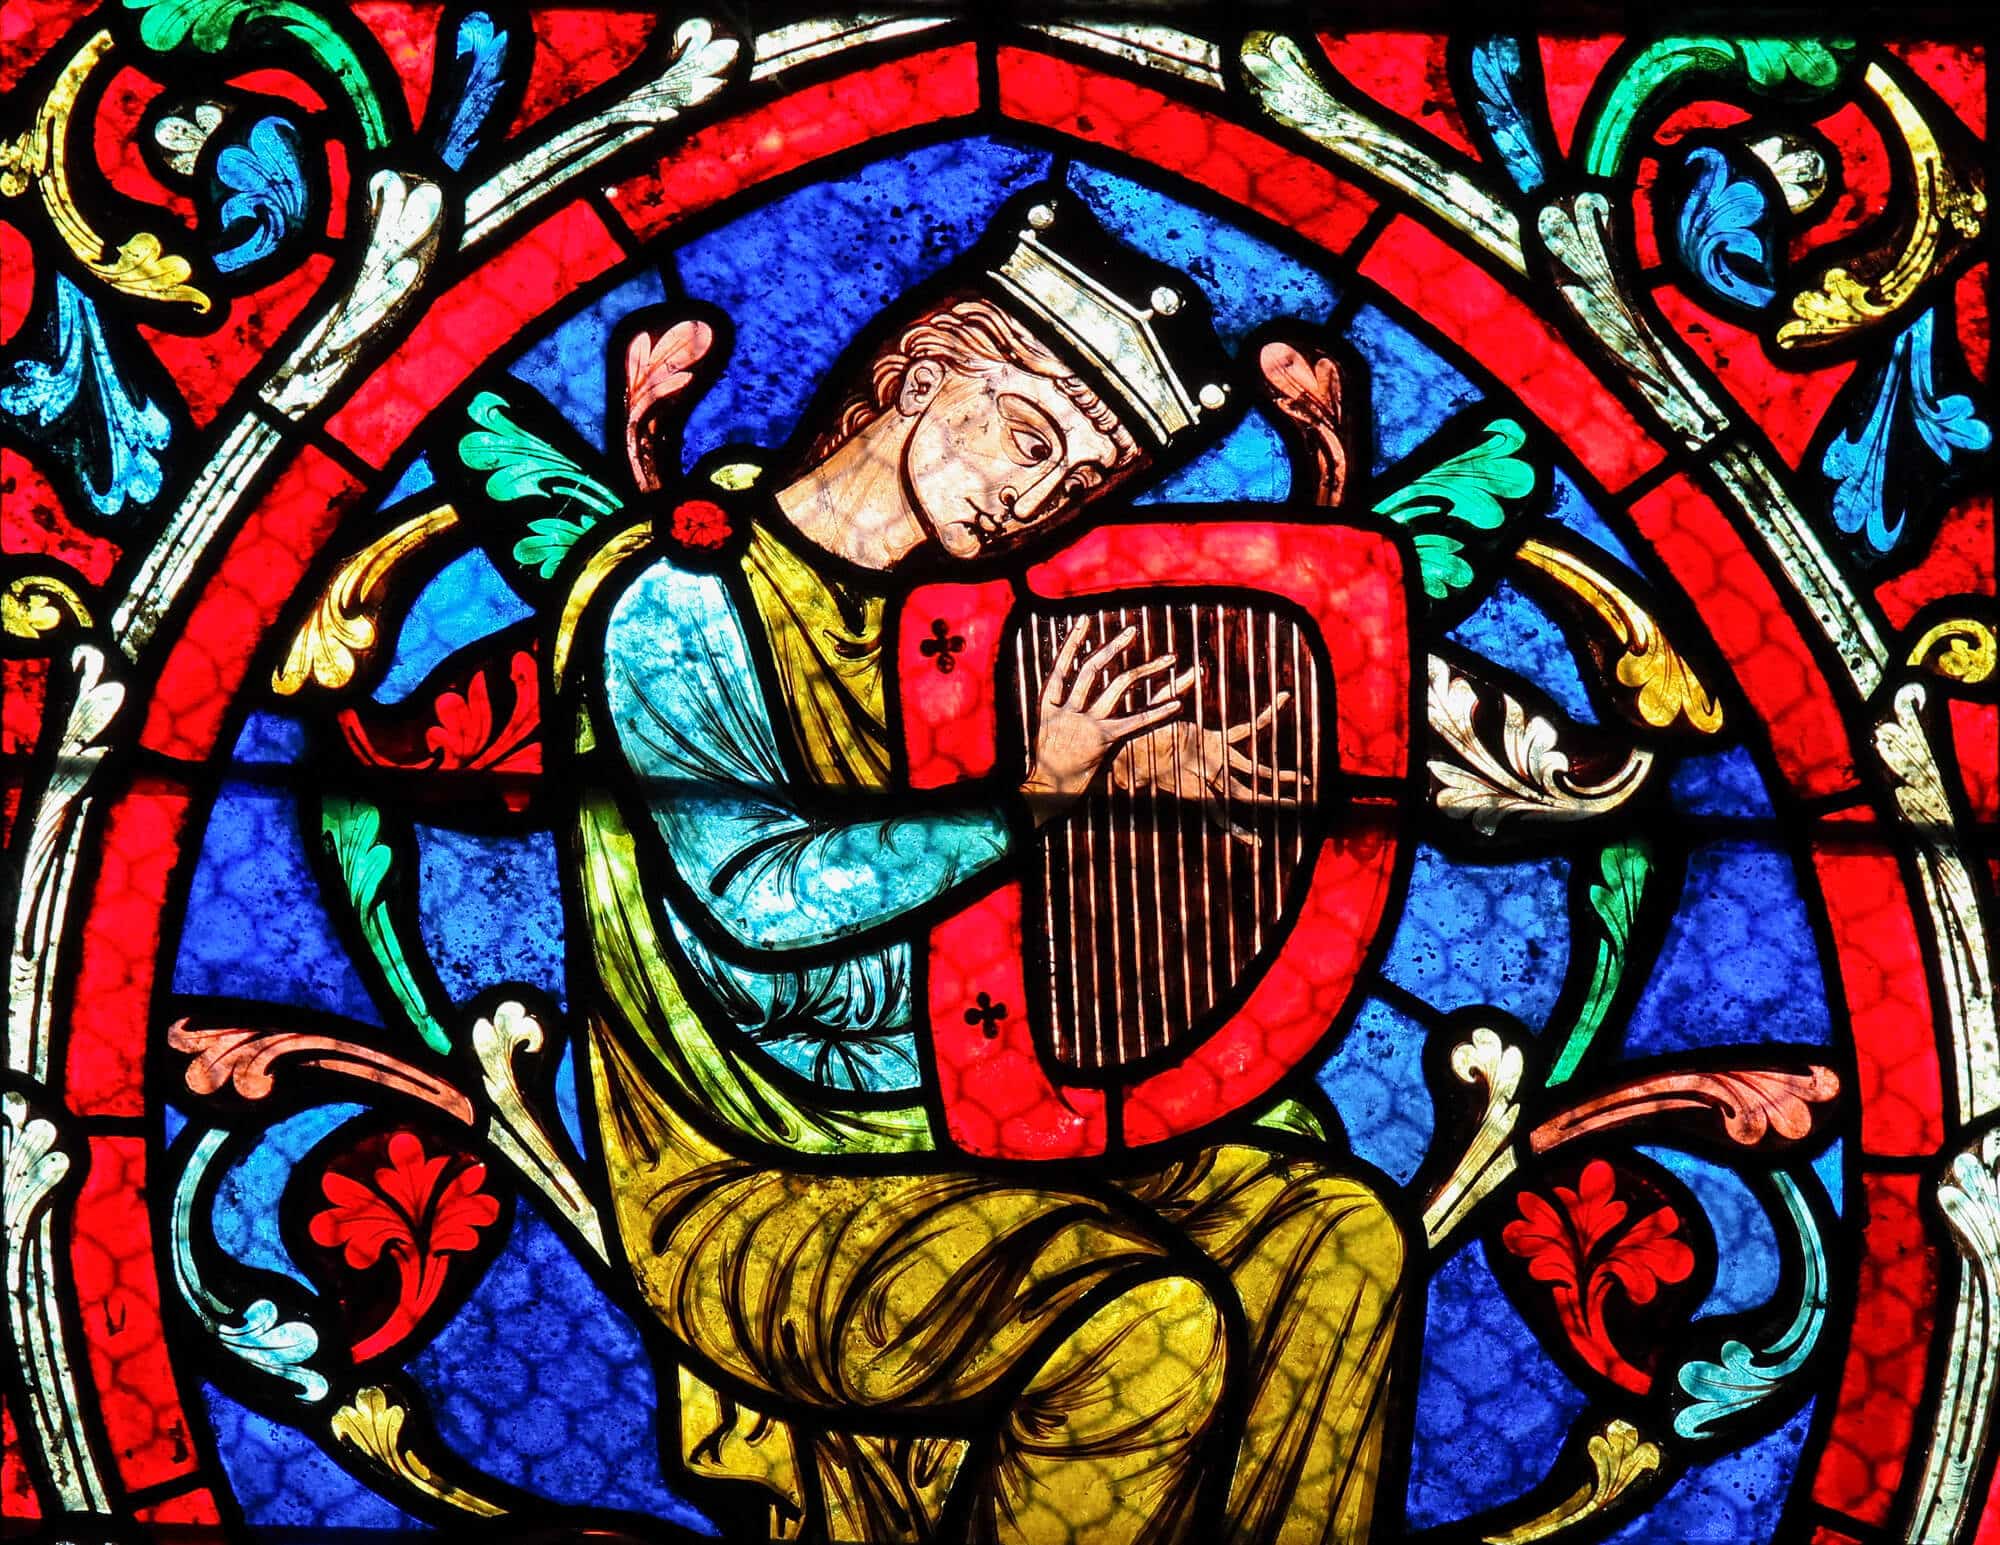 דוד המלך מנגן על נבל. ויטראז' בקטדרלת נוטרדם בפריז. <a href="https://depositphotos.com. ">המחשה: depositphotos.com</a>